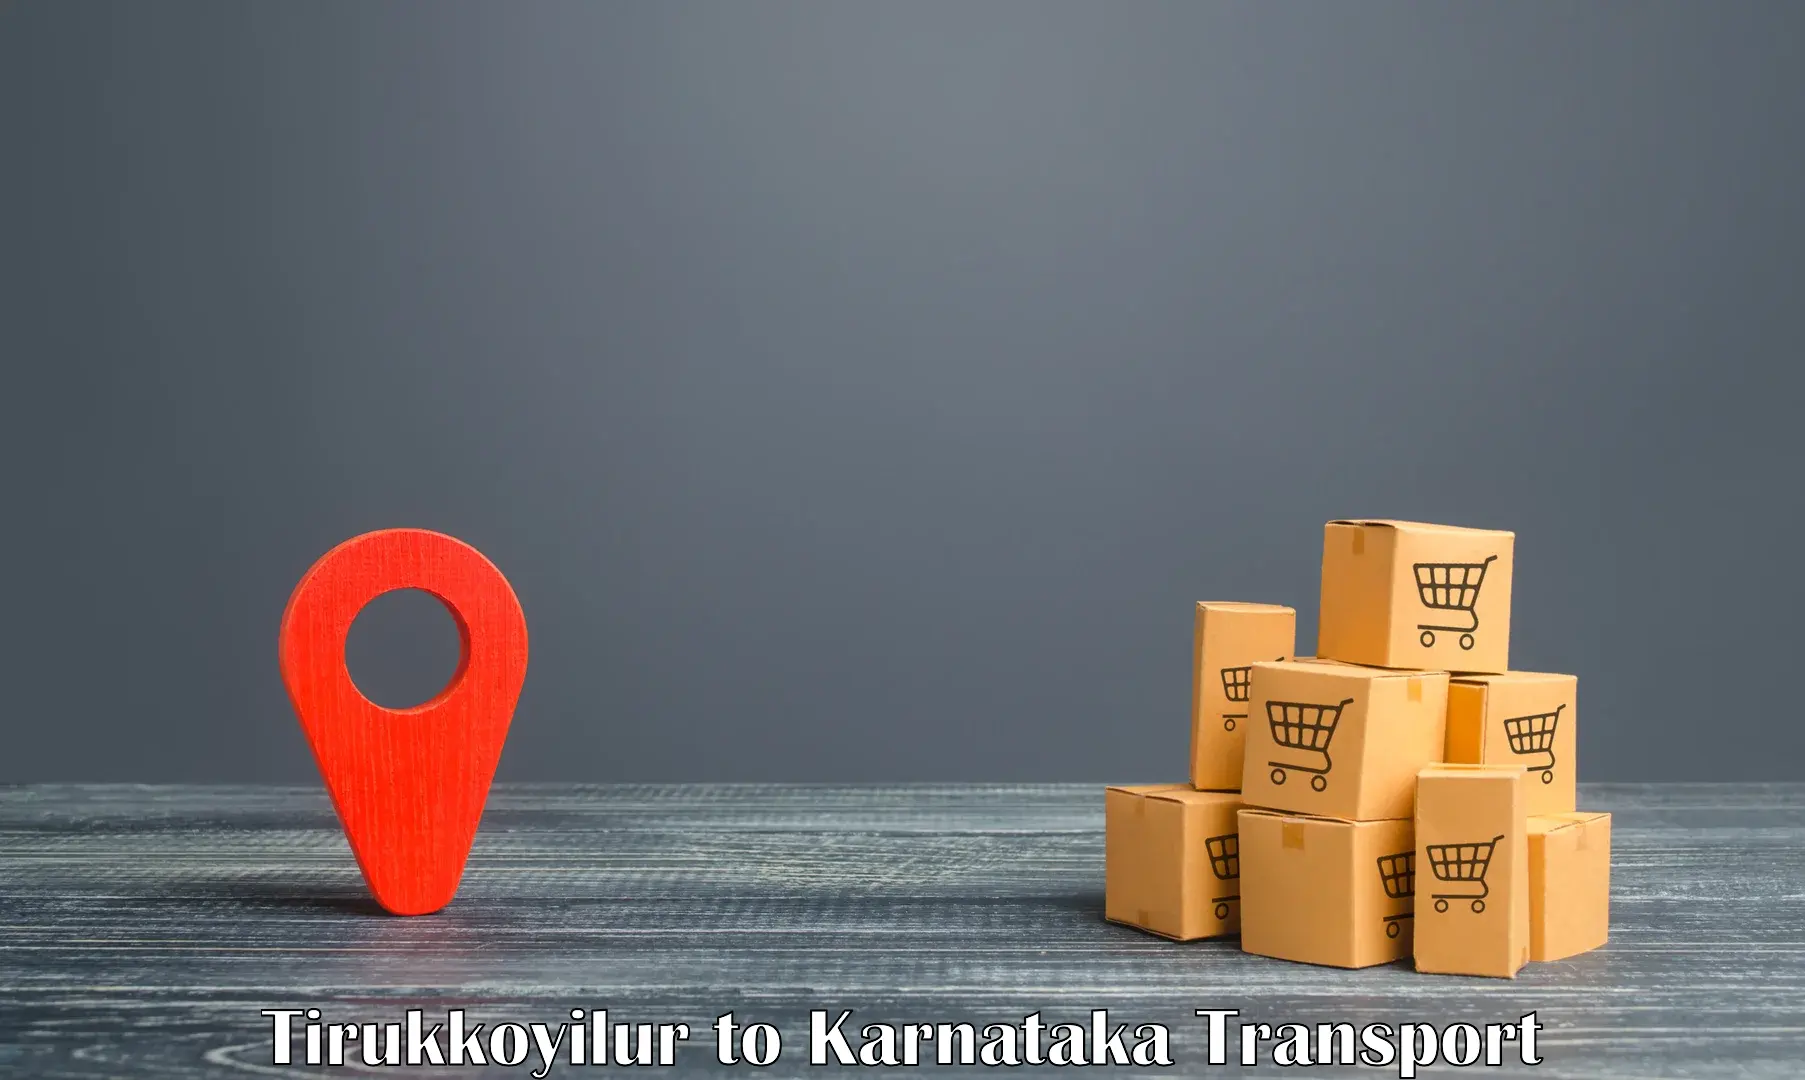 Nearby transport service Tirukkoyilur to Ranebennur